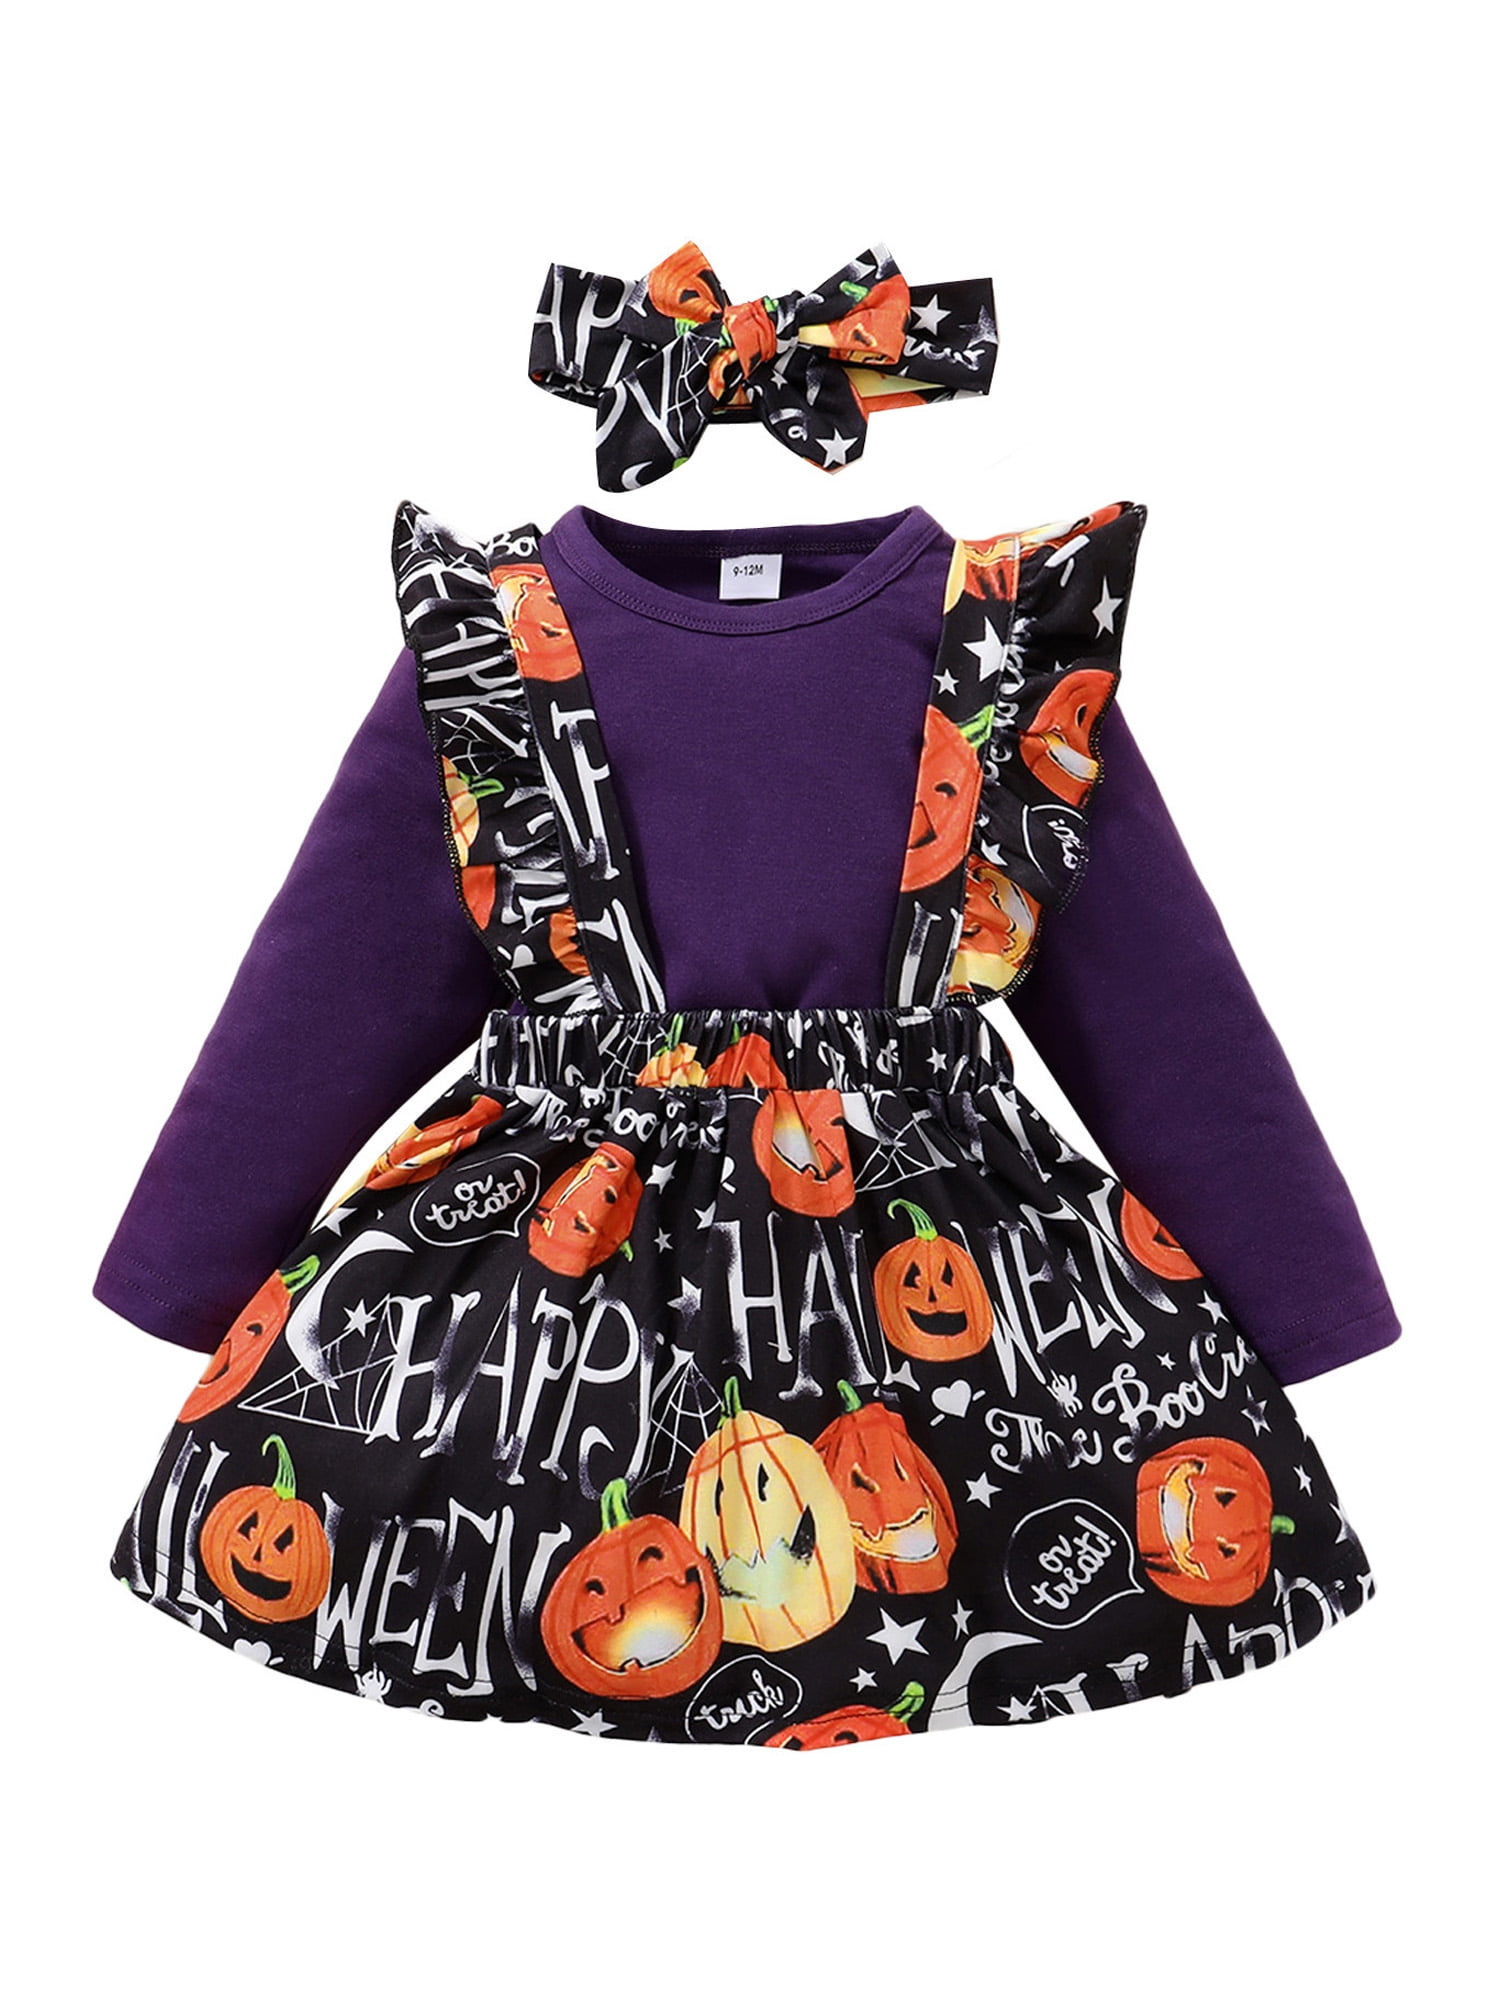 Halloween Toddler Girls Girl Clothes Ruffle Romper Top Suspender Pumpkin Bat Ghost Skirt Outfit Set 